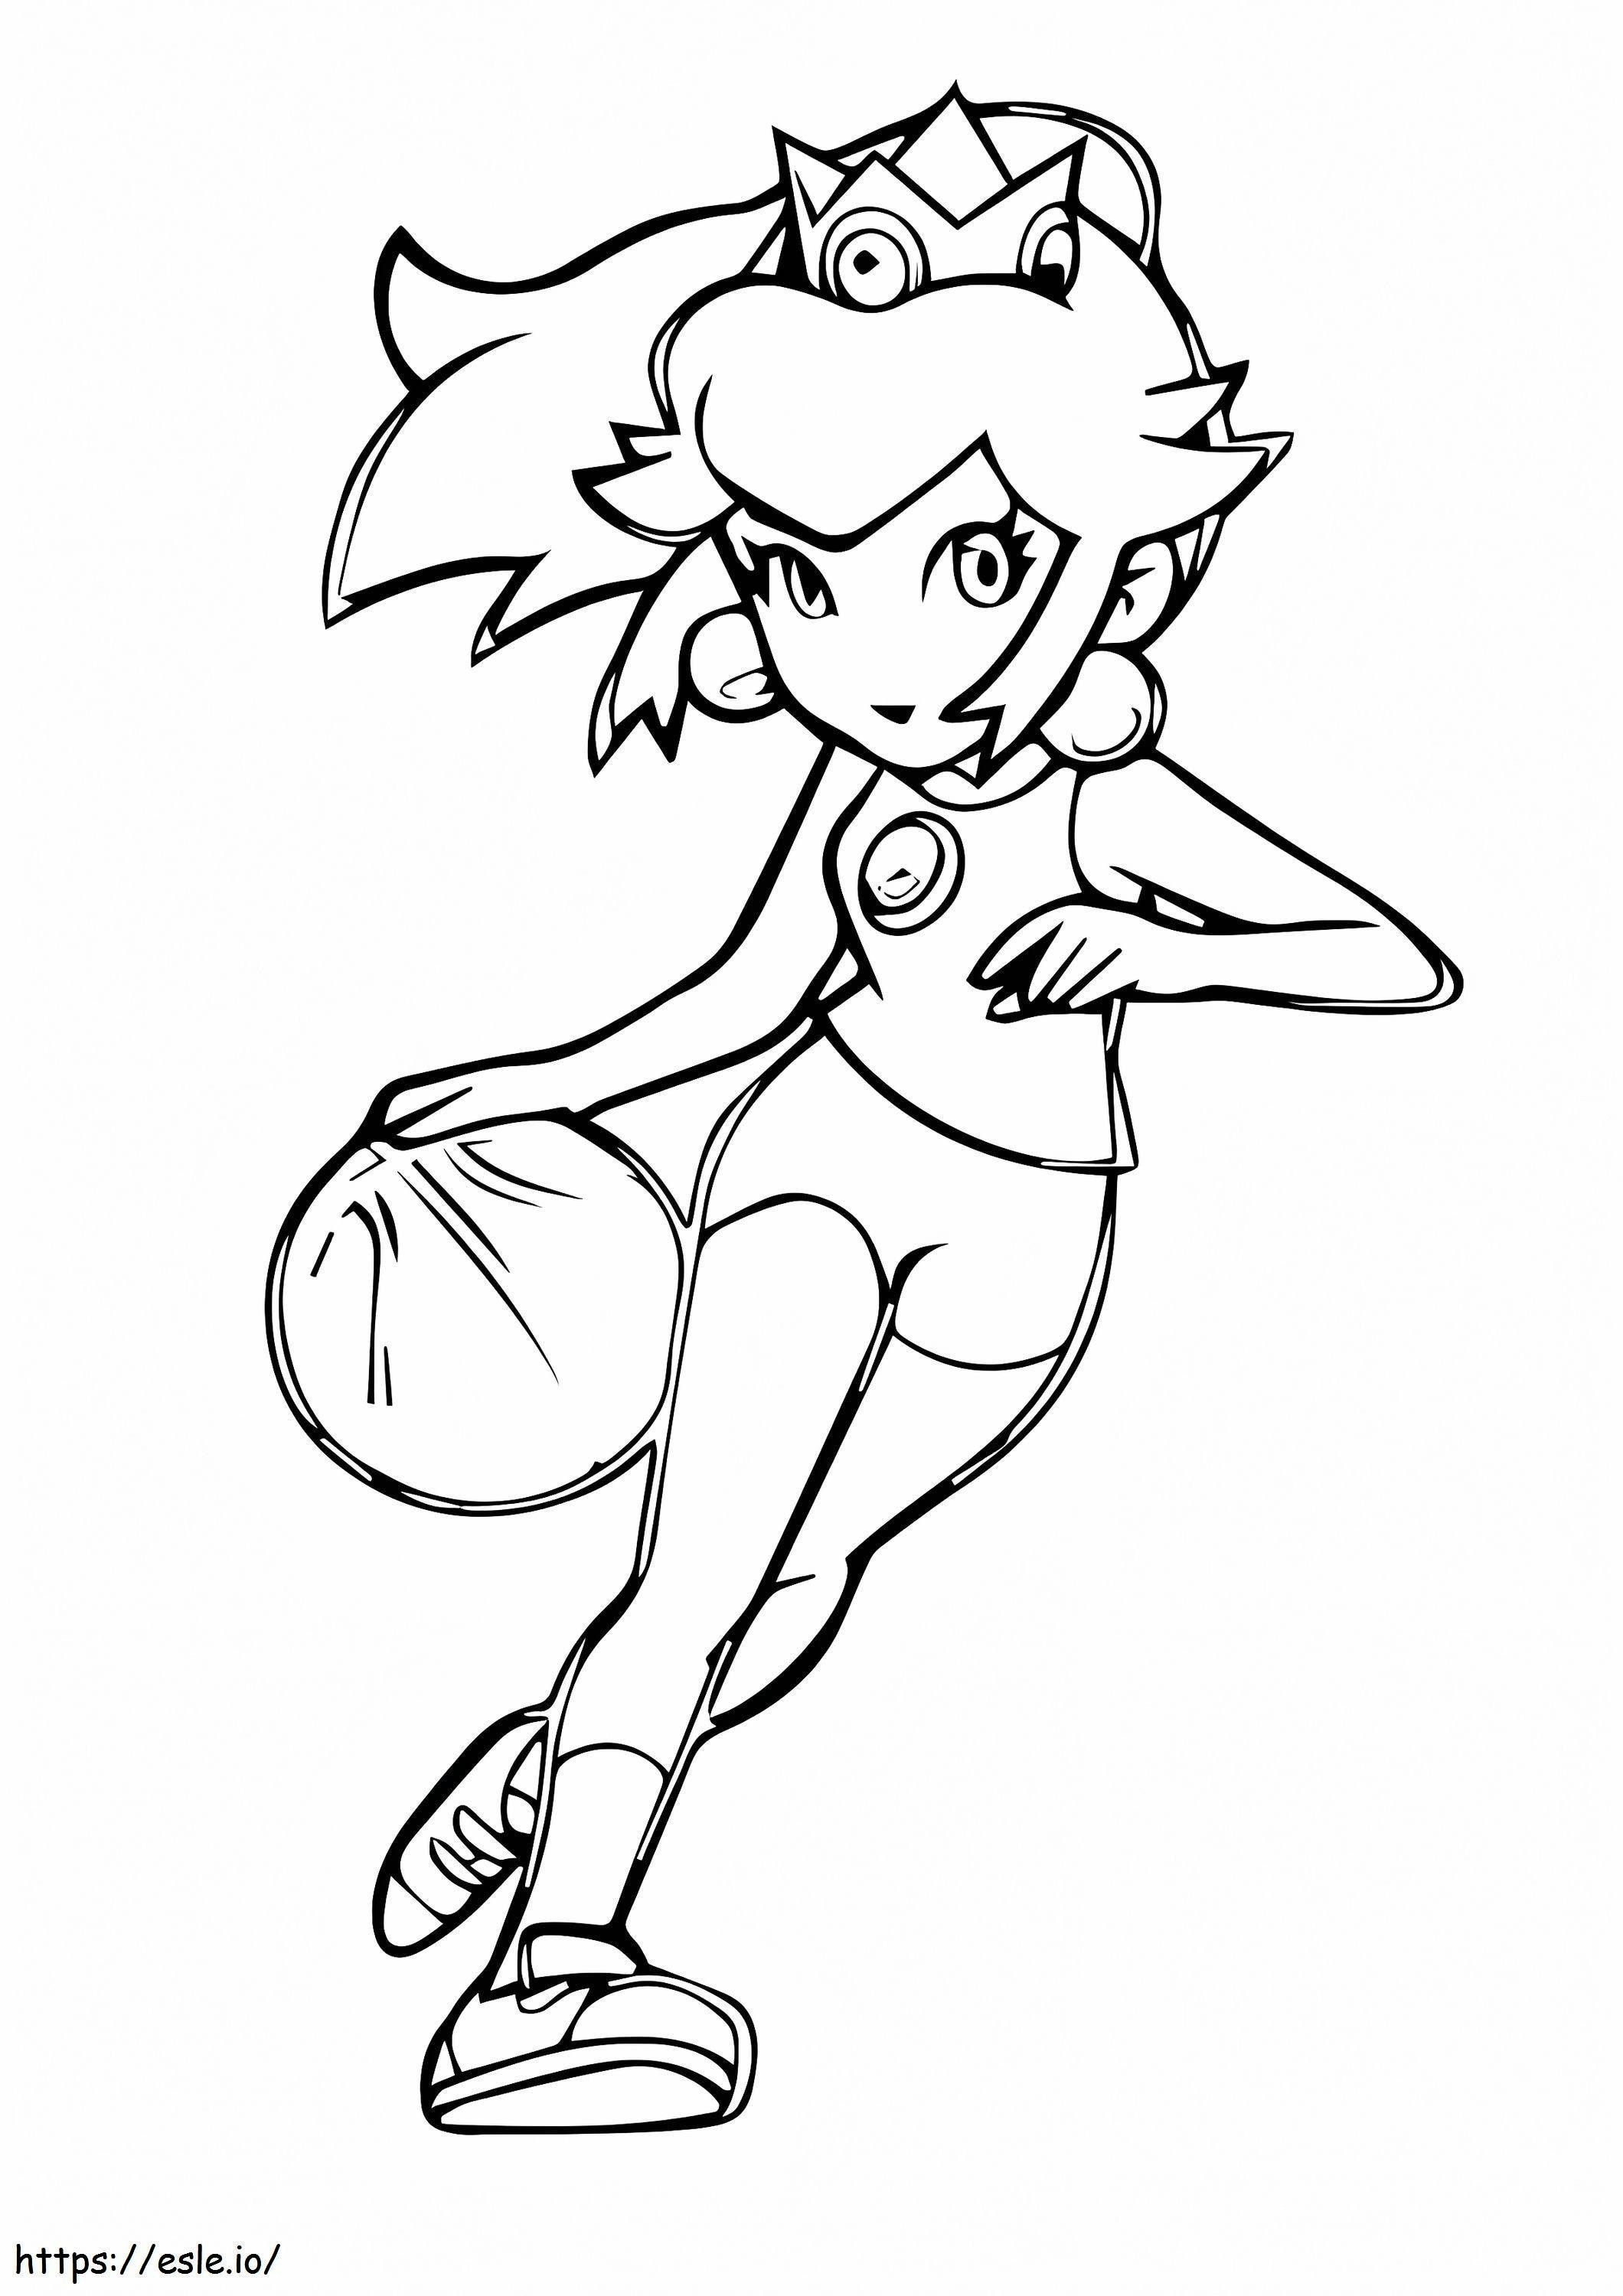 Prinzessin Peach spielt Basketball ausmalbilder